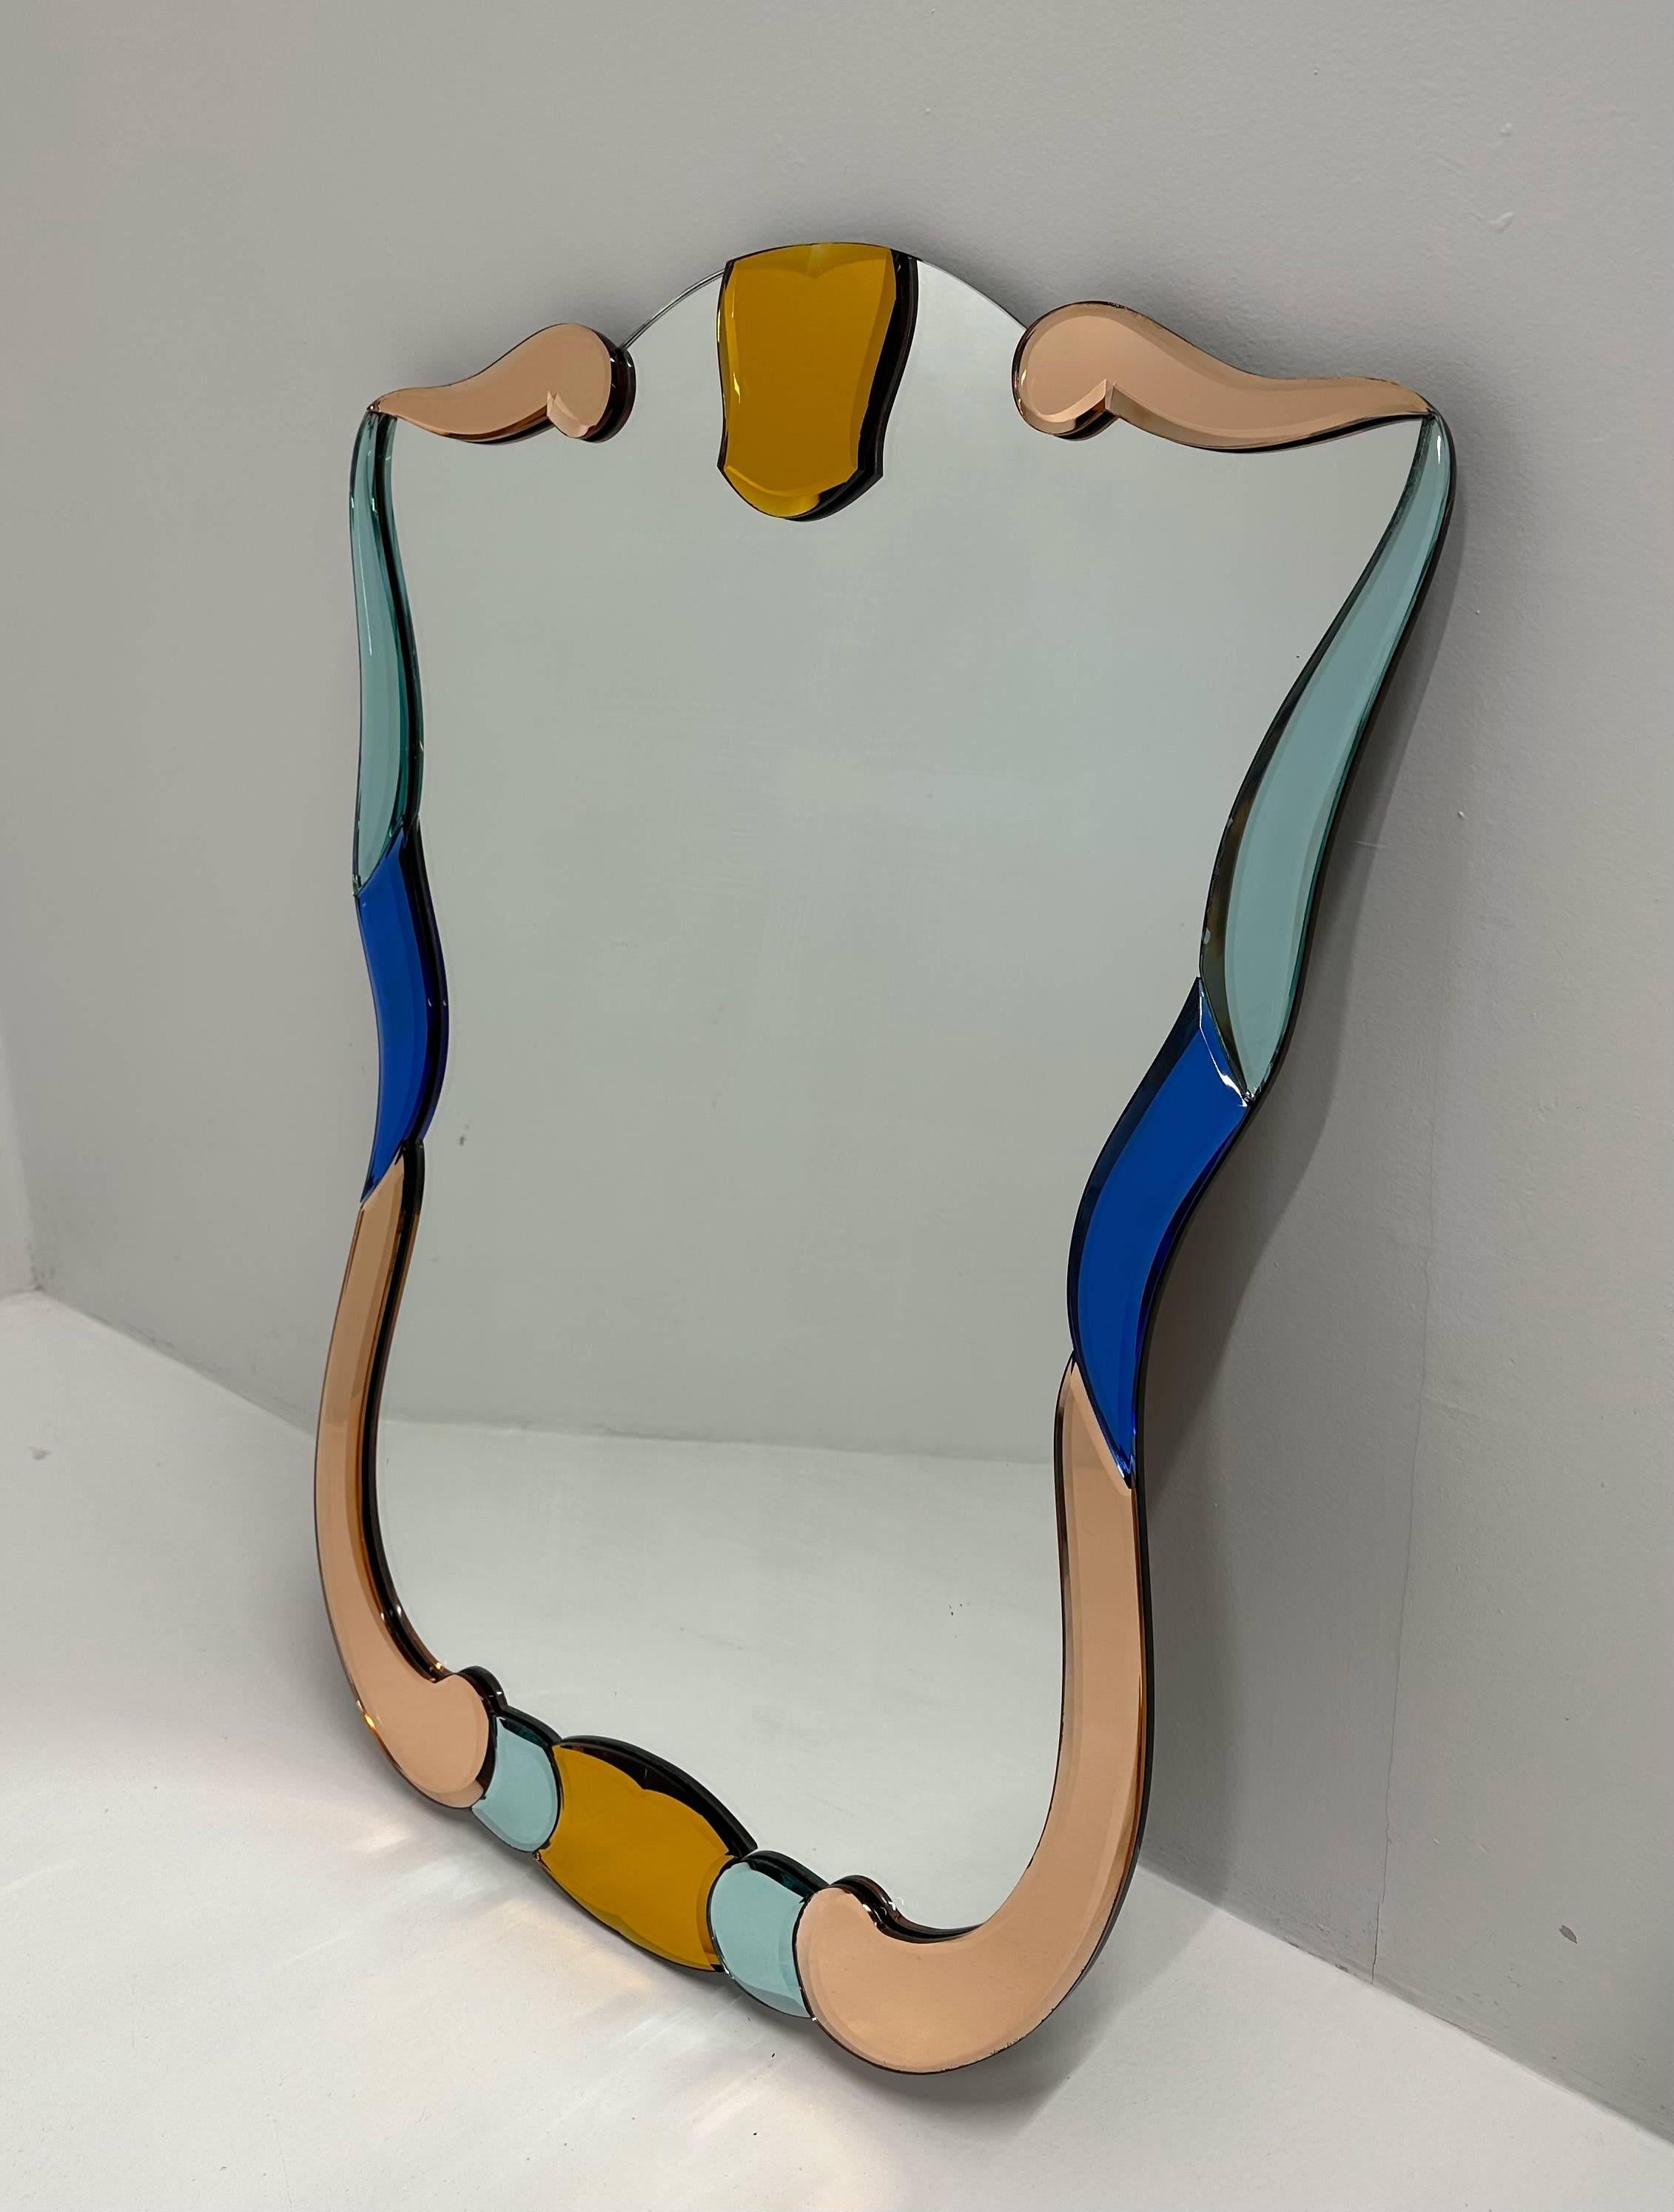 Cet élégant miroir a été produit en Italie, plus précisément à Murano (près de Venise, c'est la capitale mondiale de l'artisanat du verre) dans les années 1980. Le miroir central est encadré par des miroirs de Murano de couleur pastel et de formes